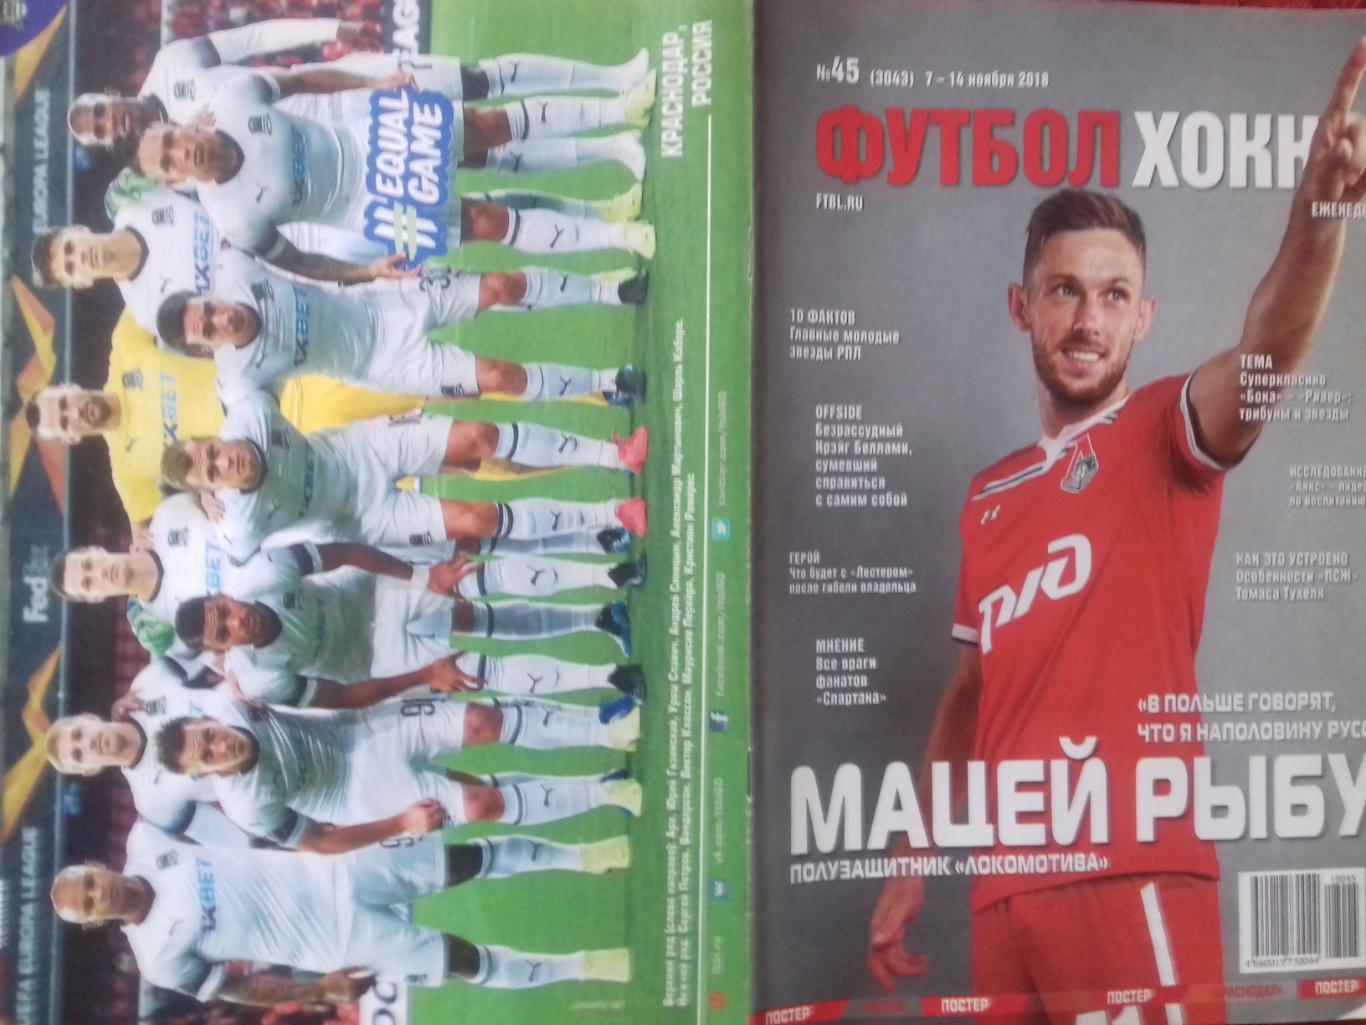 Еженедельник Футбол-хоккей №45 2018г. Постеры Краснодар и Манчестер Юнайтед